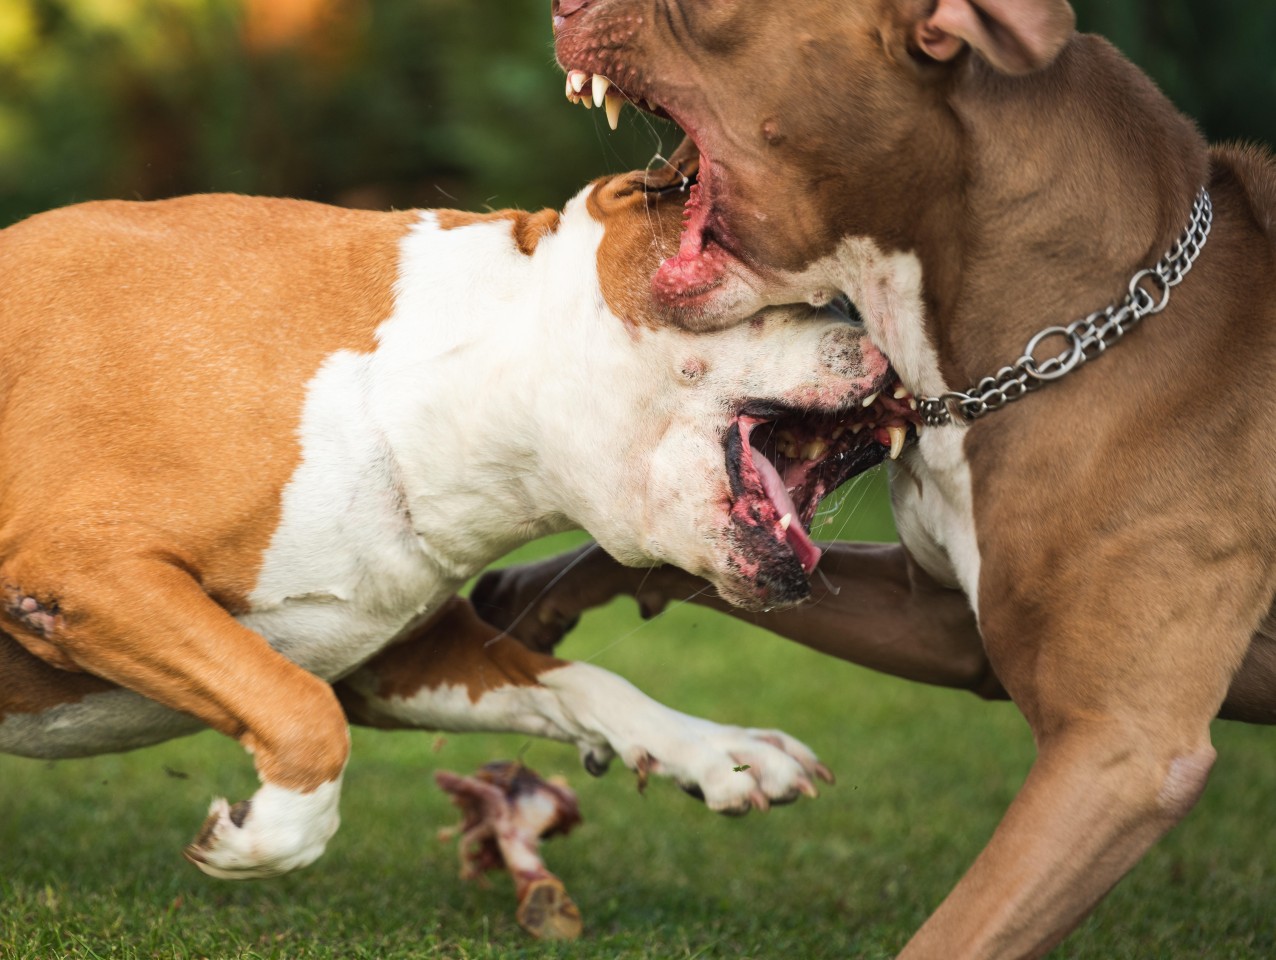 Zwei Hunde kämpfen miteinander. Als ein Mann dazwischen geht, beißt einer der Hunde seinen Daumen ab (Symbolbild).